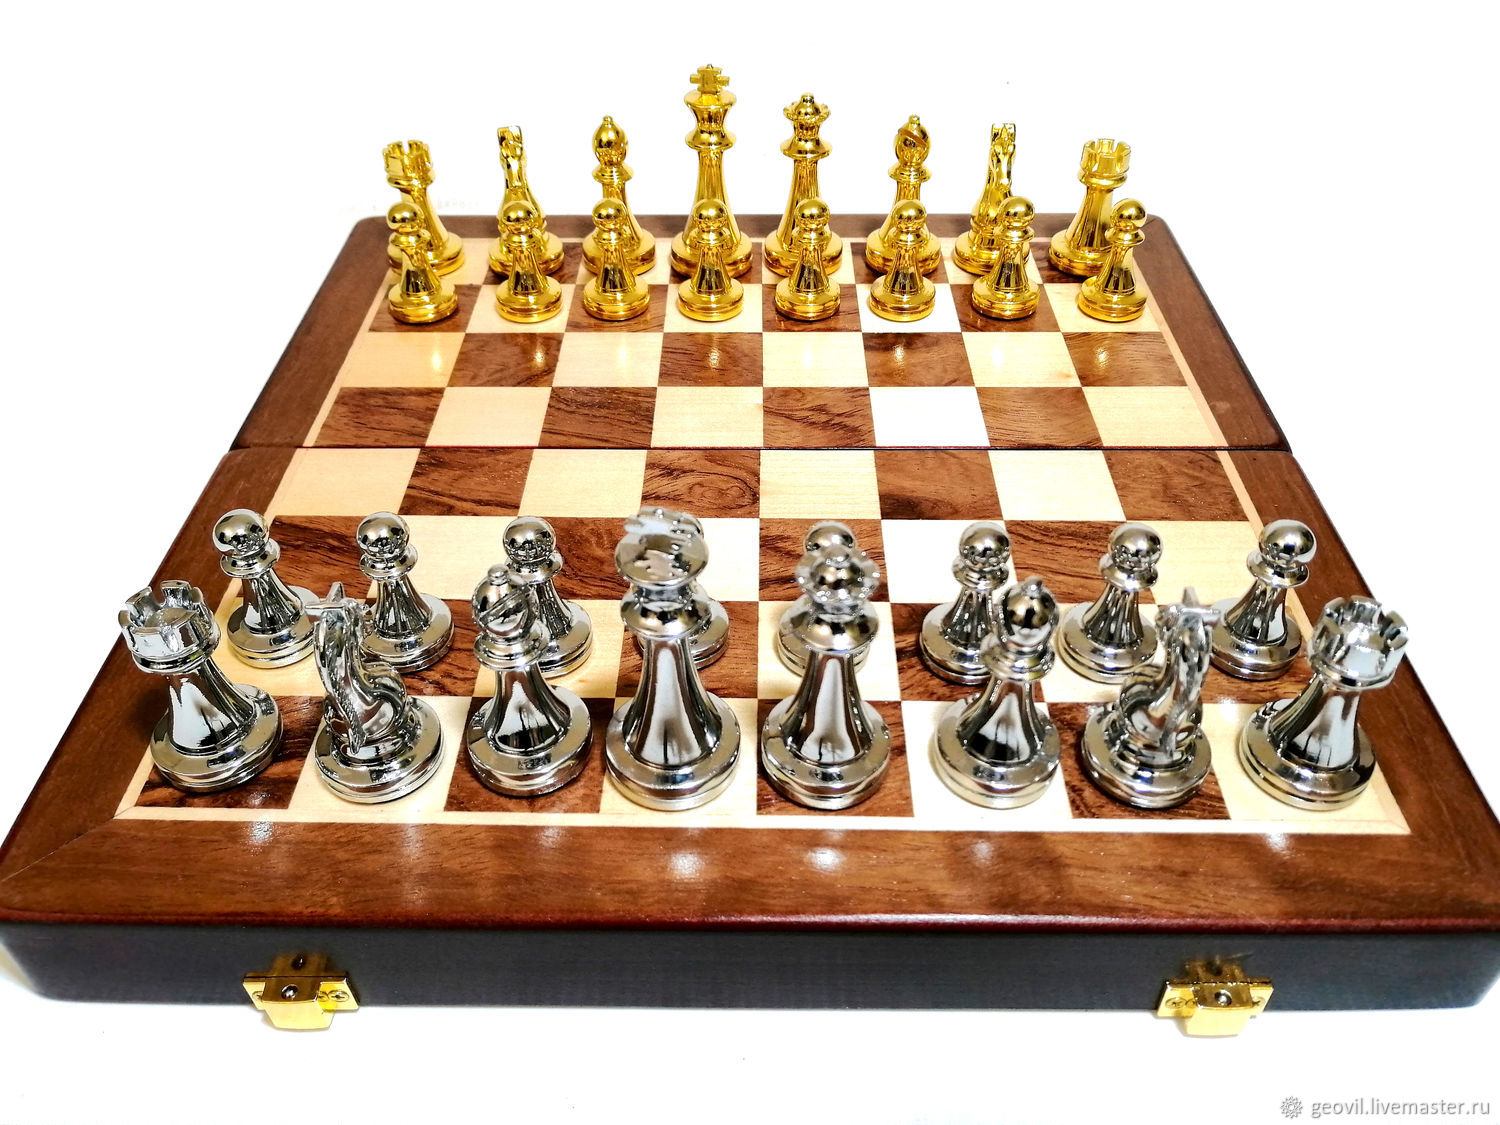 35x35 oder 45x45 cm  Holz Chess Schach Schachspiel Шахматы 30x30 